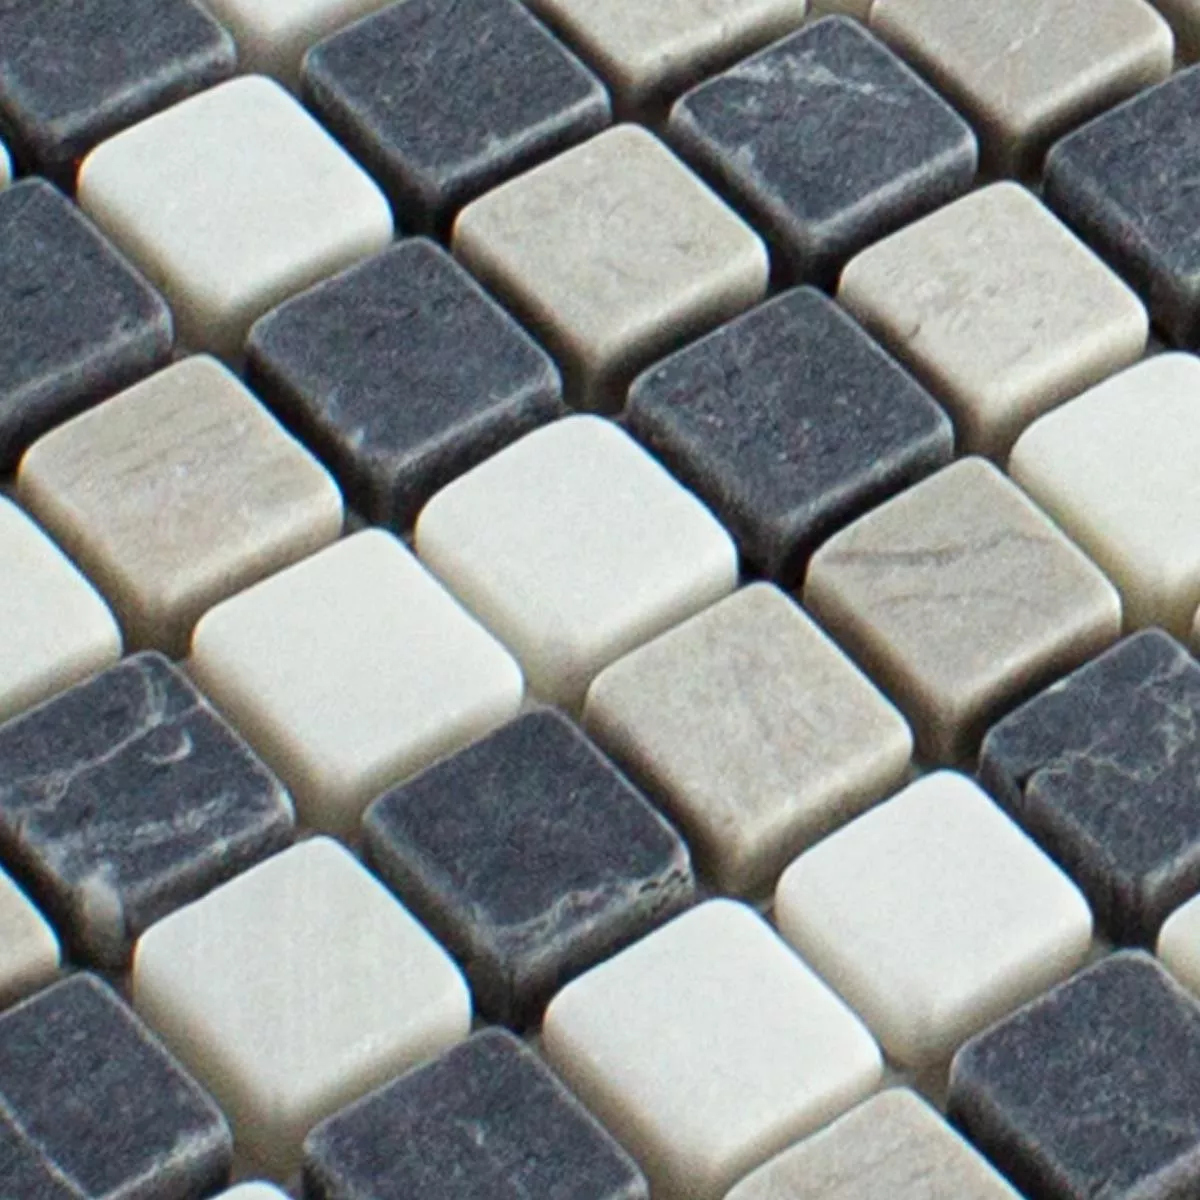 Sample Marble Mosaic Erdemol Beige Grey Black